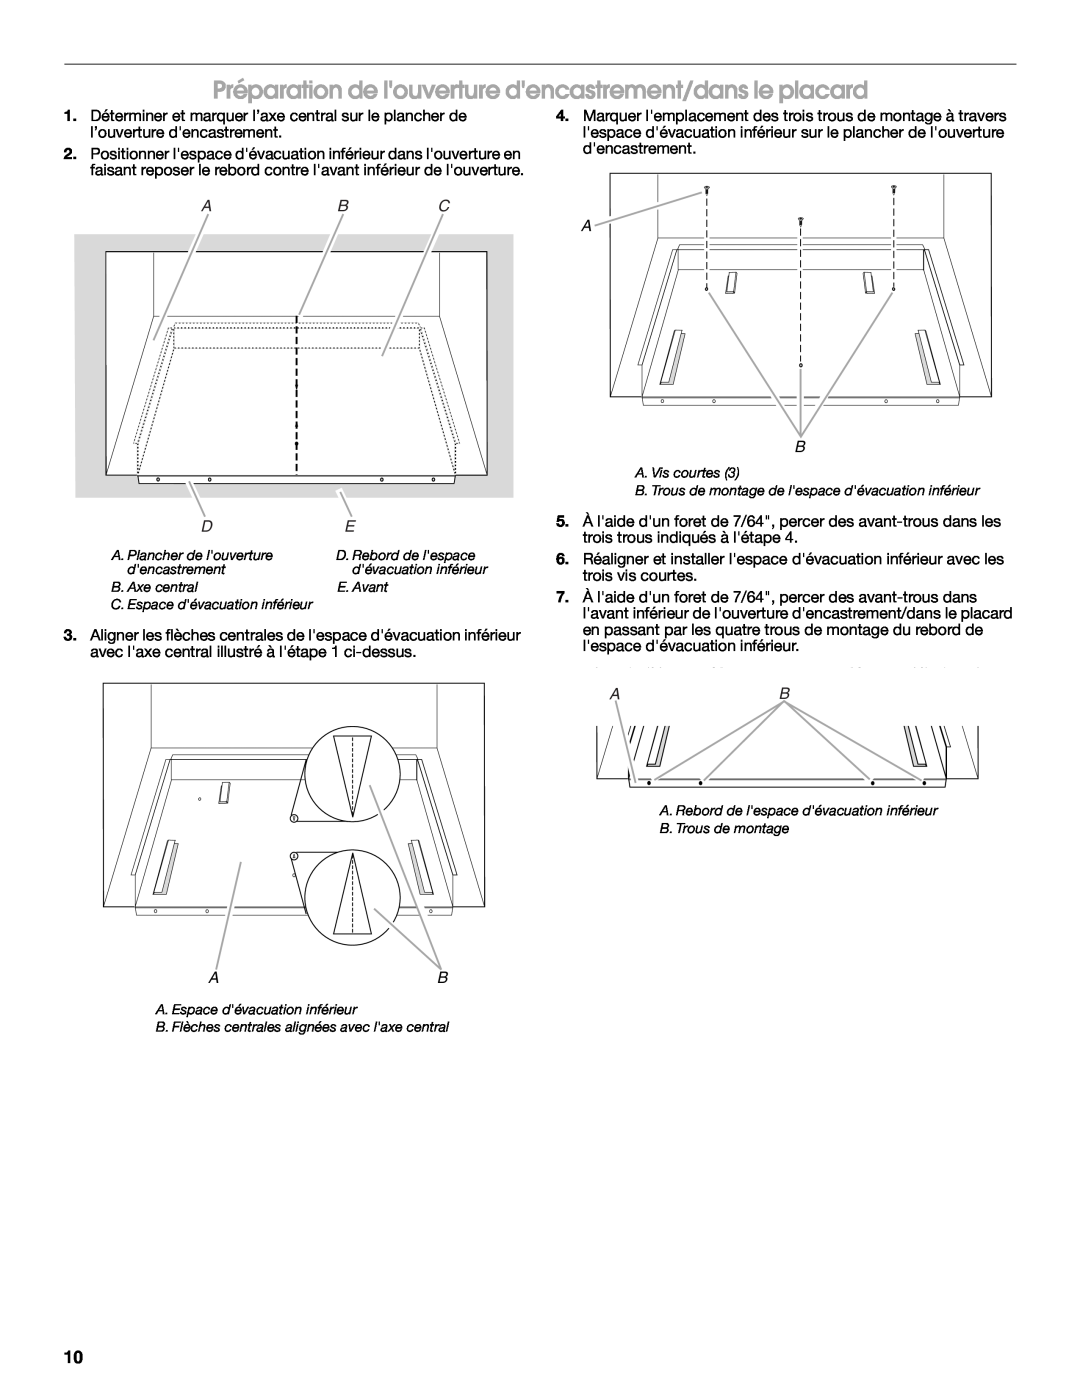 Whirlpool MK2167 installation instructions Préparation de louverture dencastrement/dans le placard 